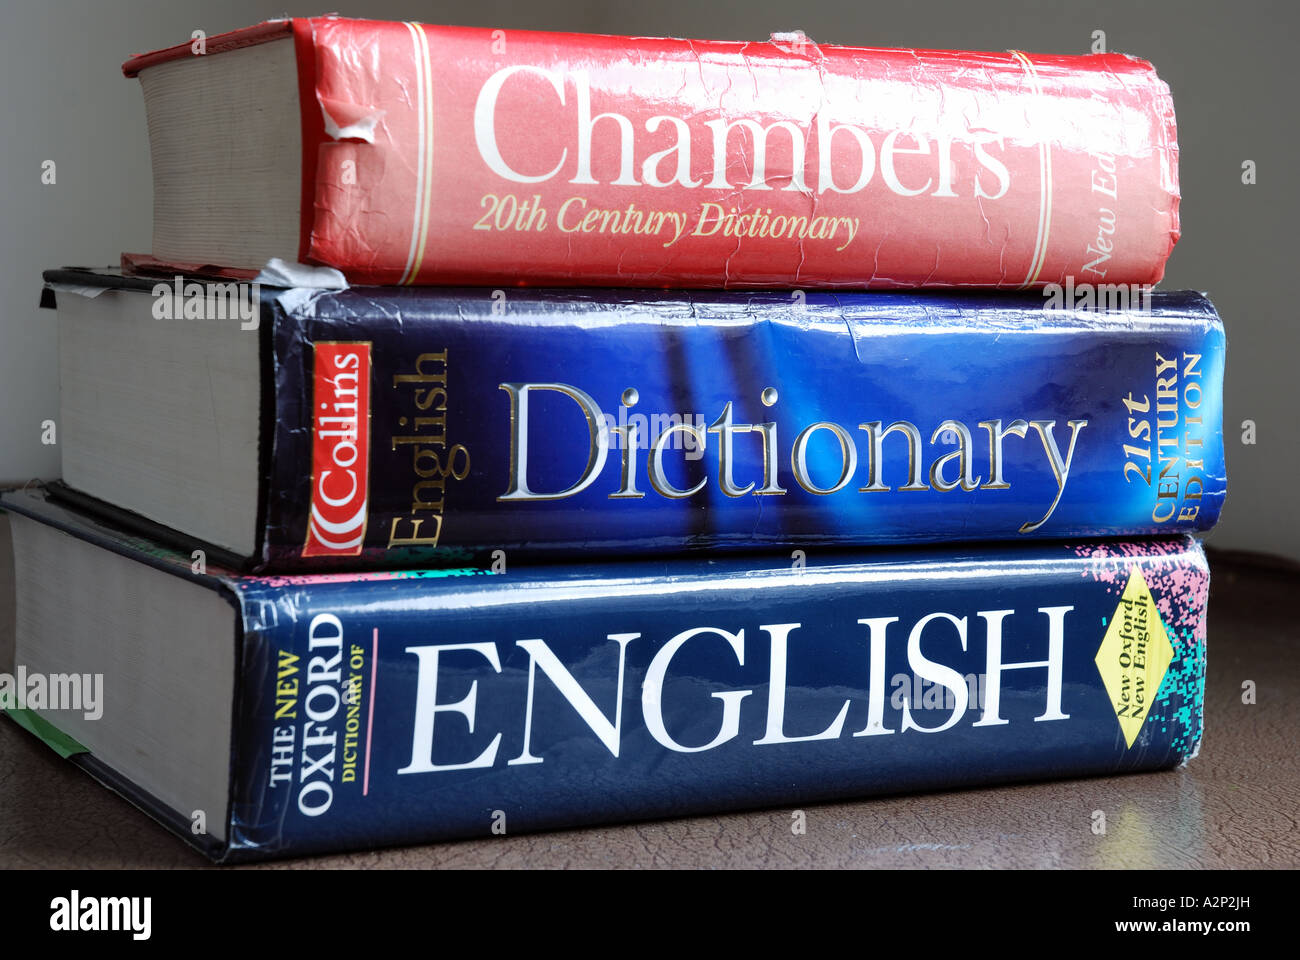 english to english dictionary